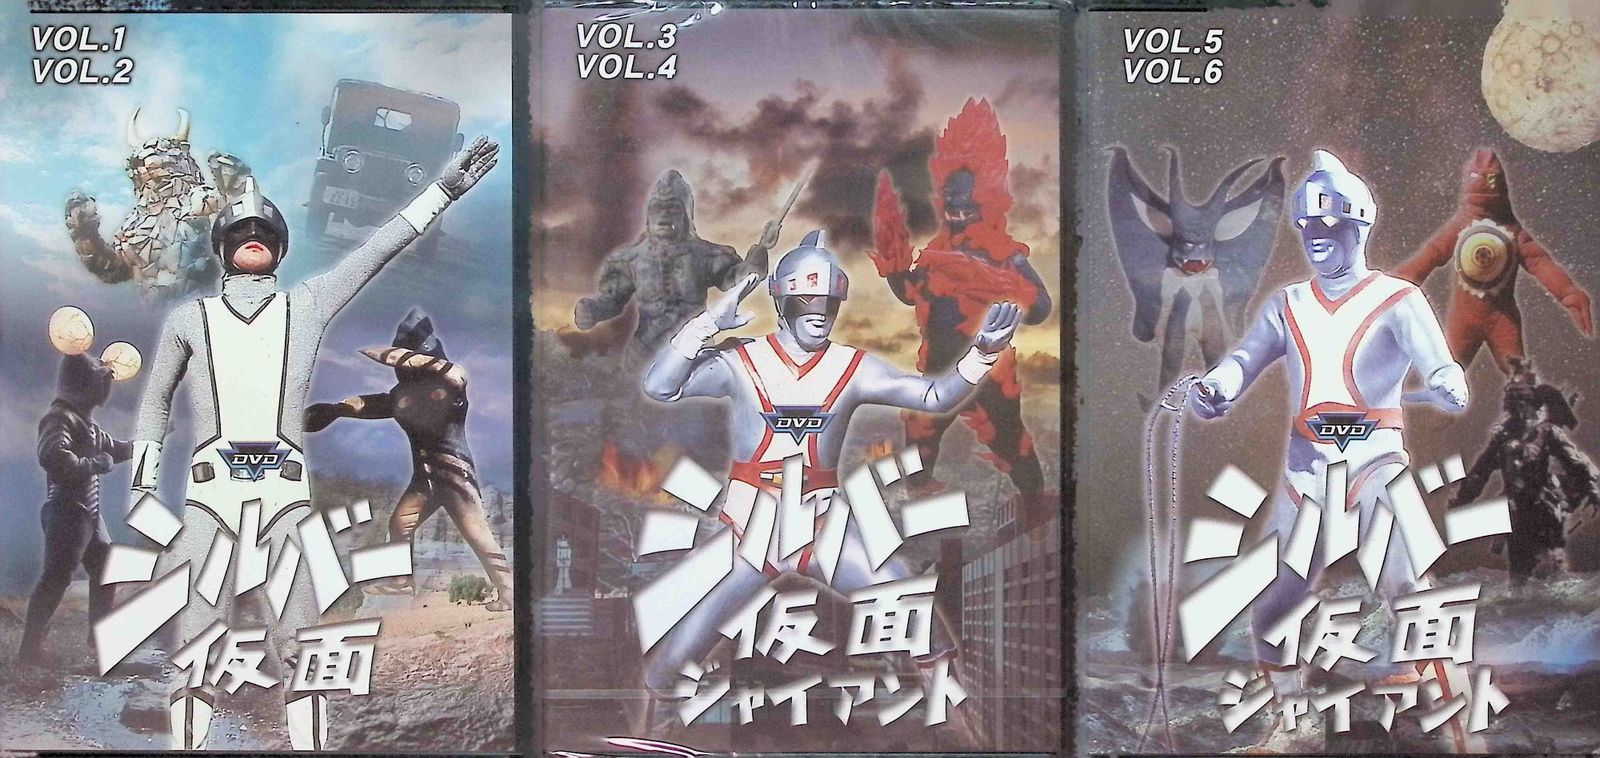 シルバー仮面 vol.1-6 (DVD全6巻・3本セット) - メルカリ